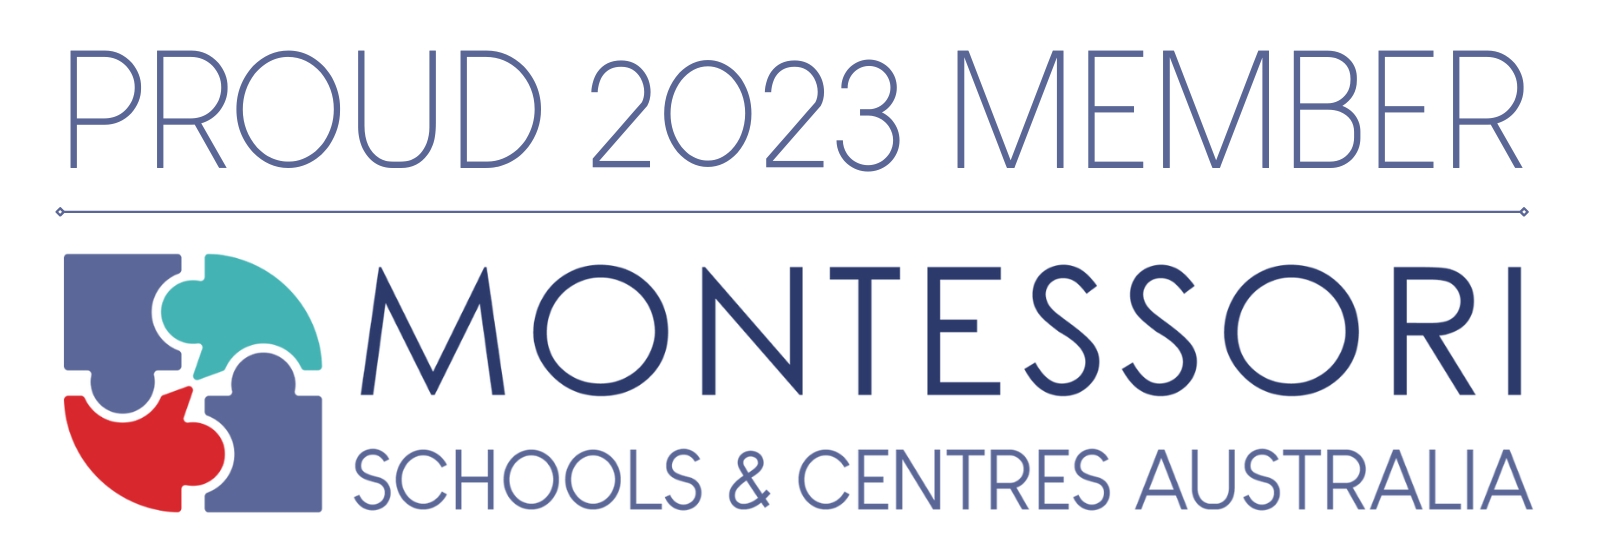 proud 2023 member. Montessori schools & centres Australia and logo